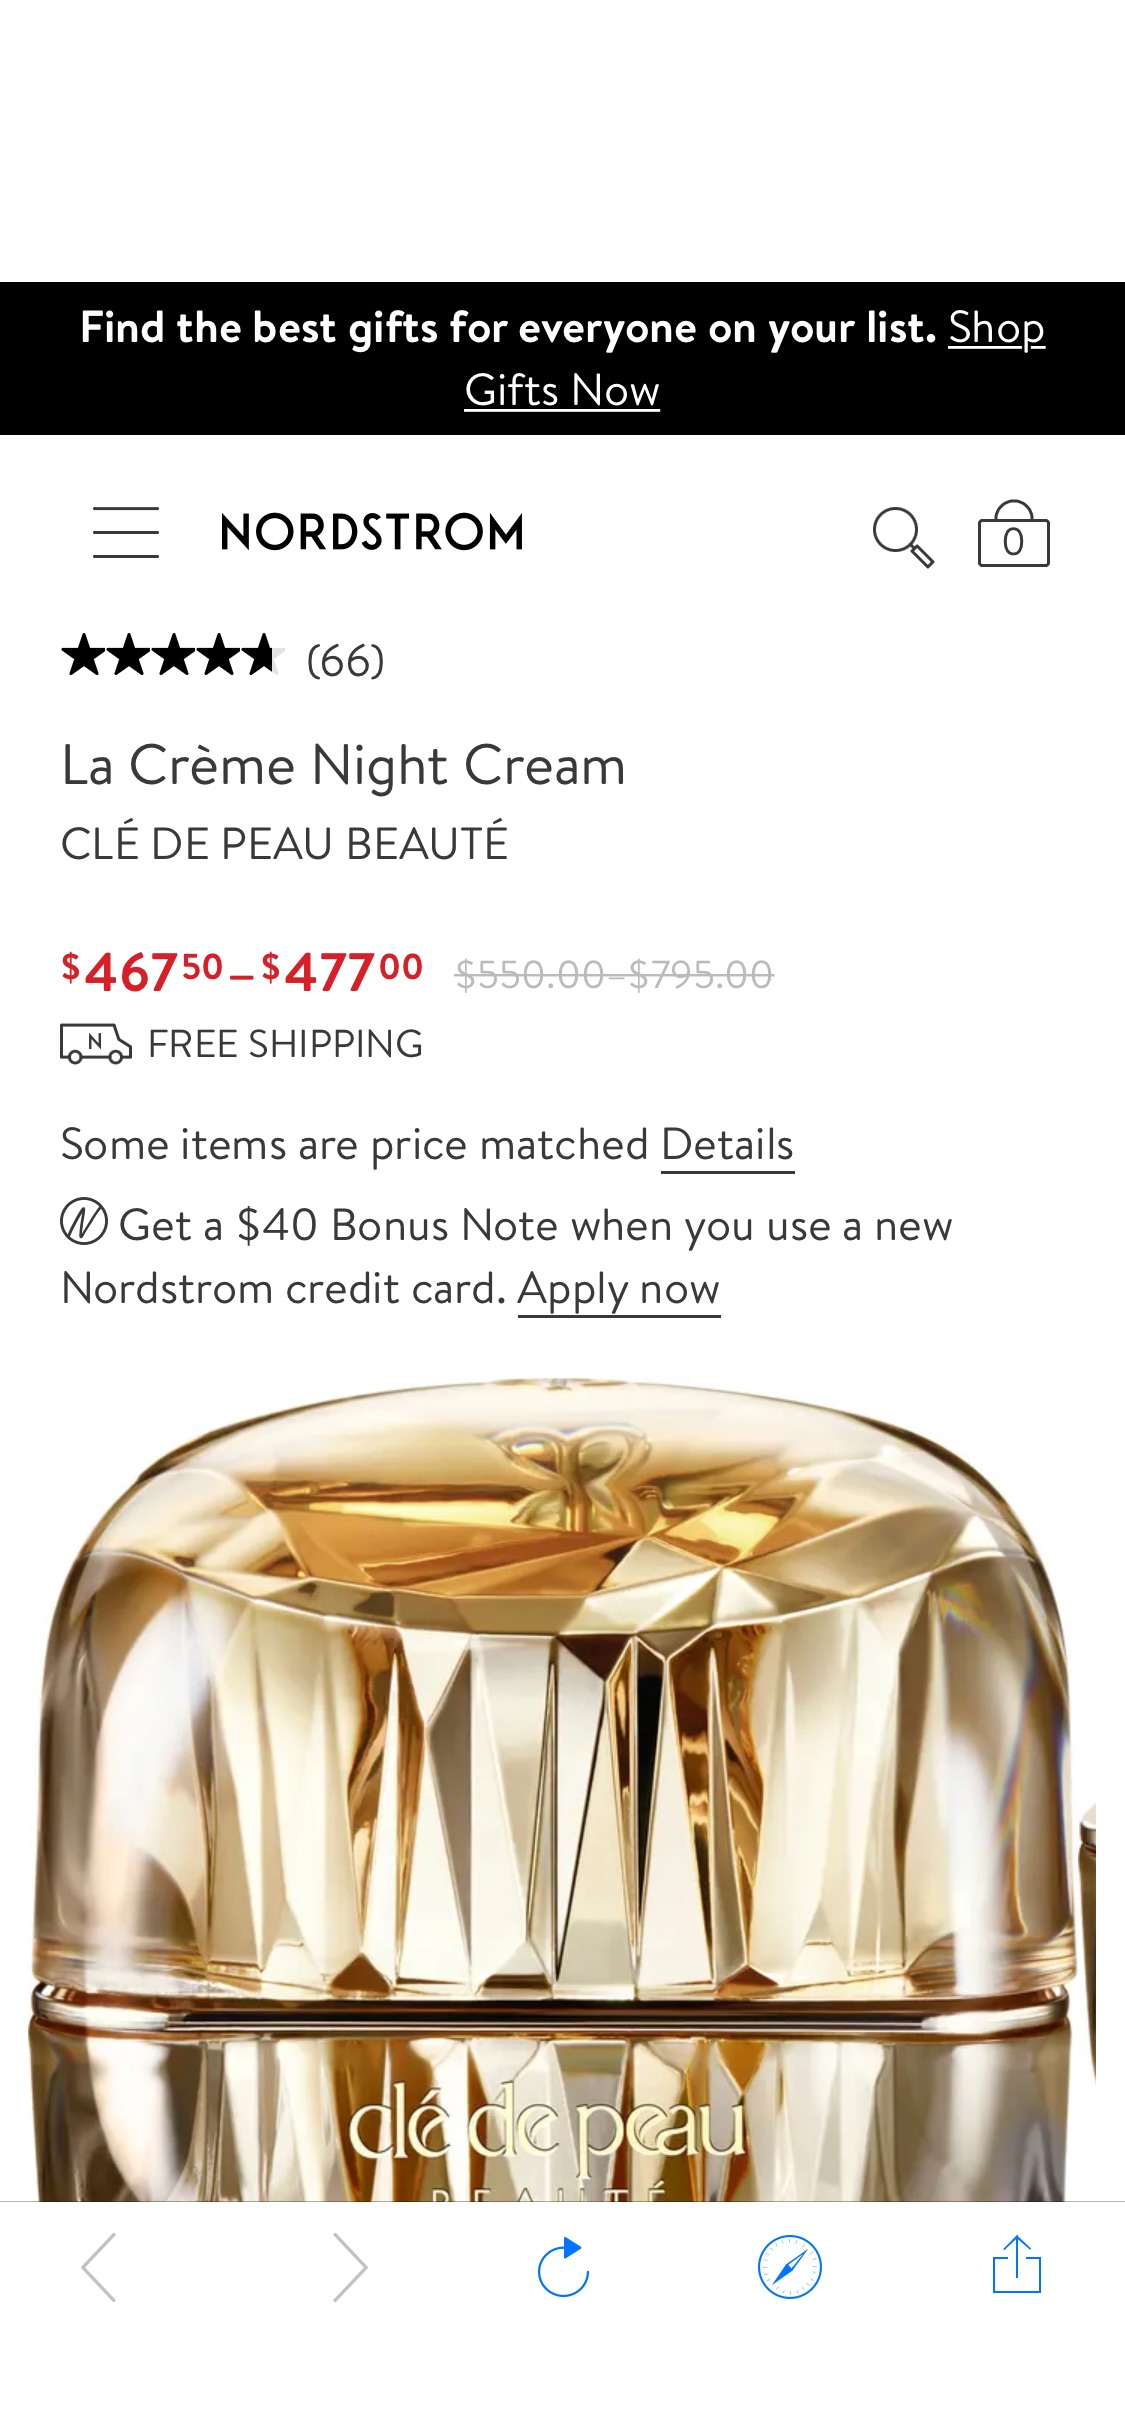 Clé de Peau Beauté La Crème Night Cream | Nordstrom 大容量晚霜六折